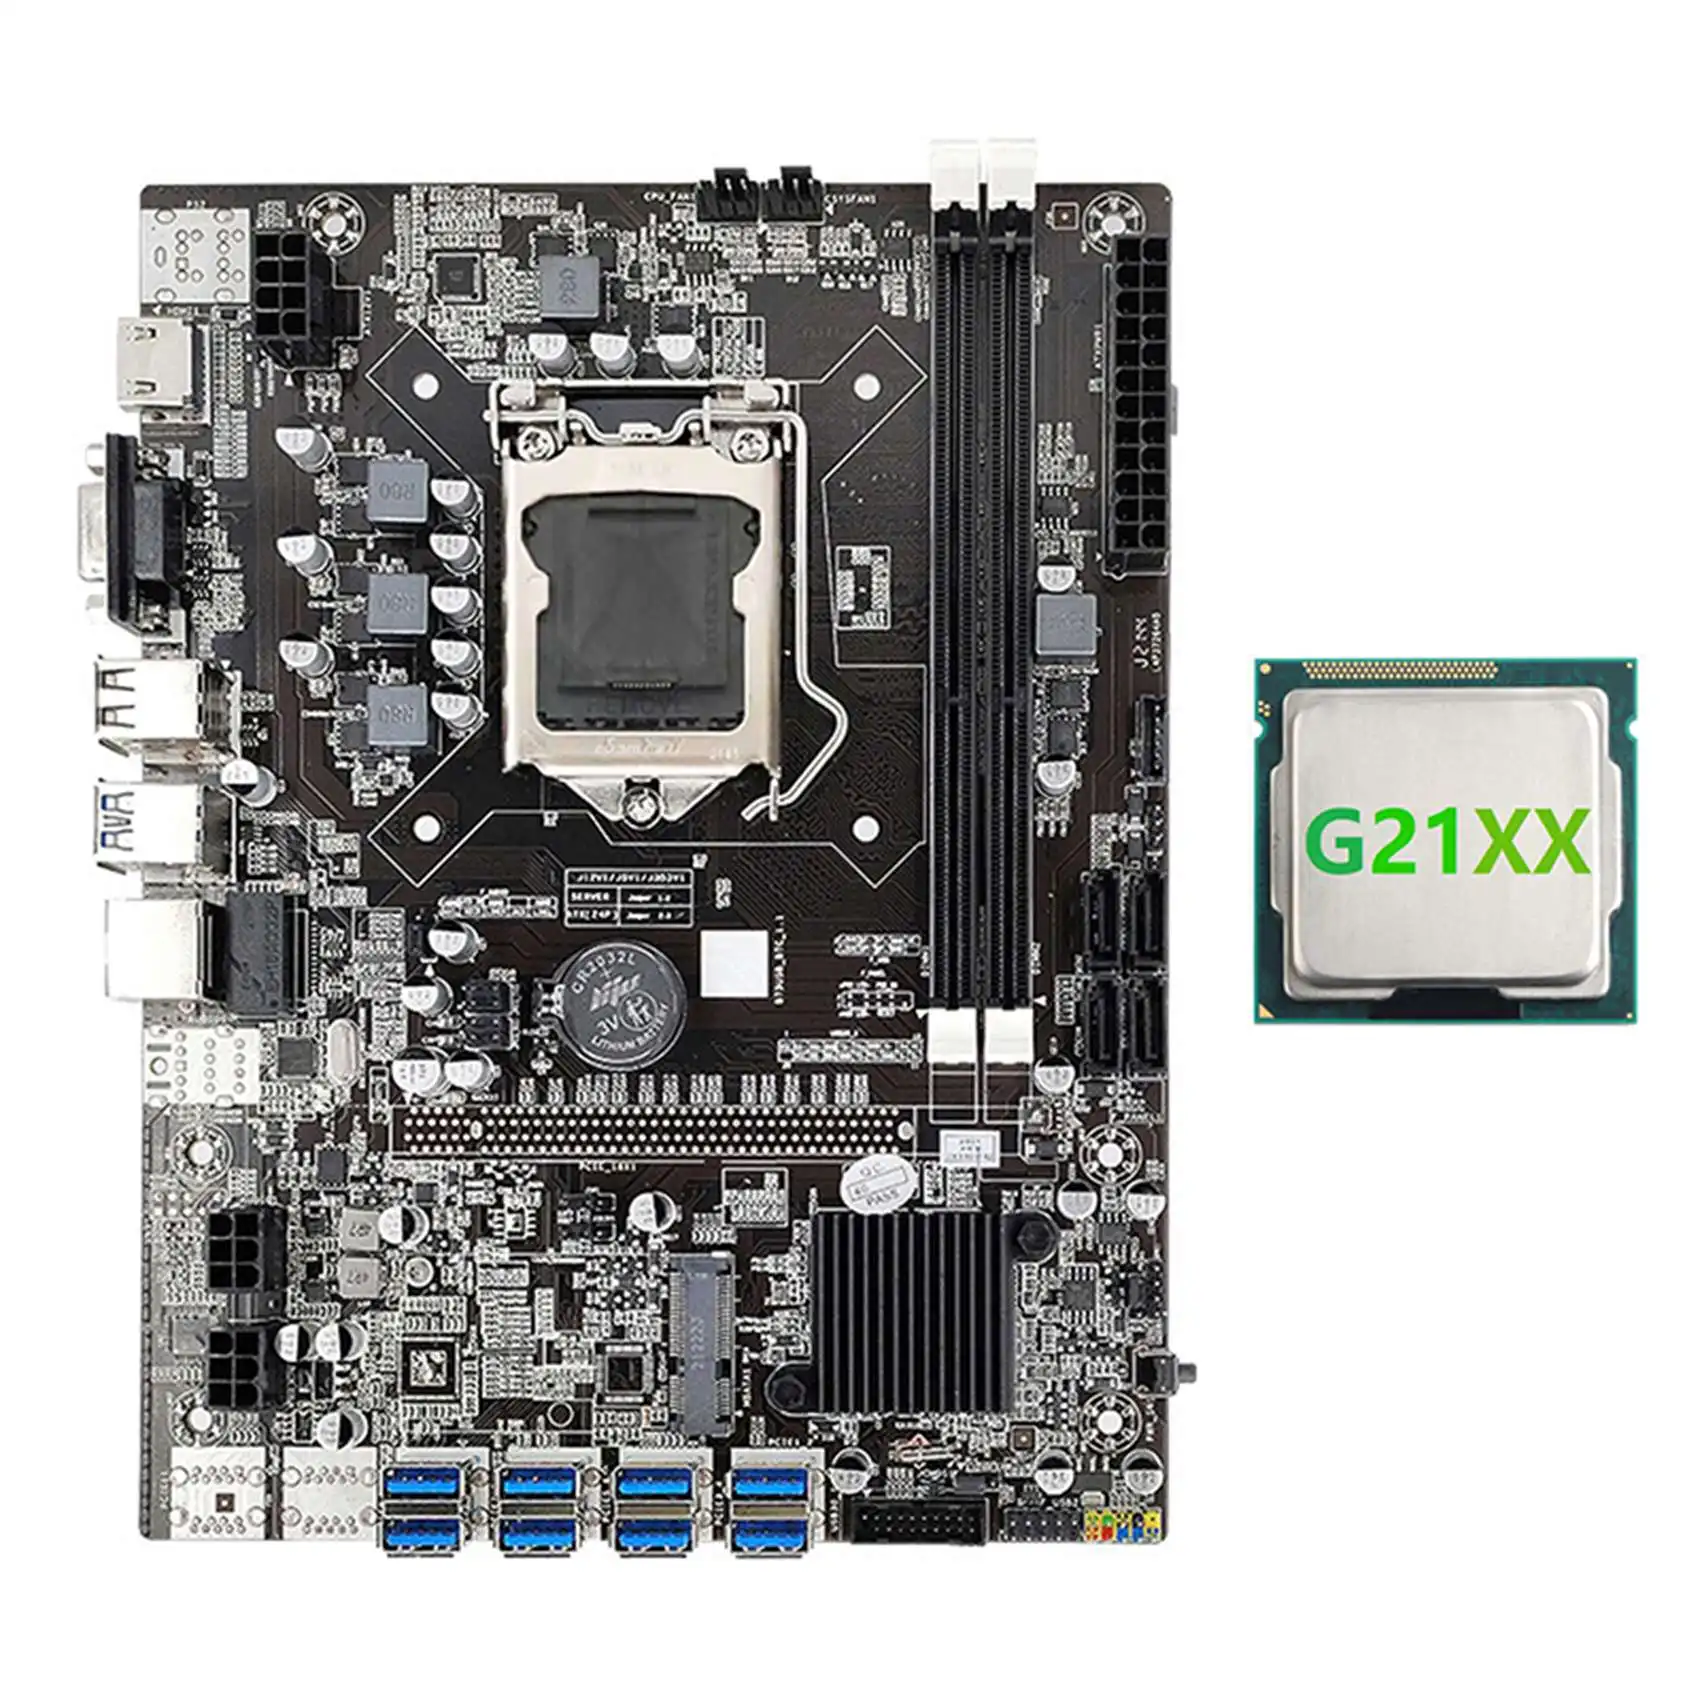 B75 8USB ETH Mining Motherboard 8XUSB+G21XX CPU LGA1155 DDR3 MSATA USB3.0 B75 USB BTC Miner Motherboard